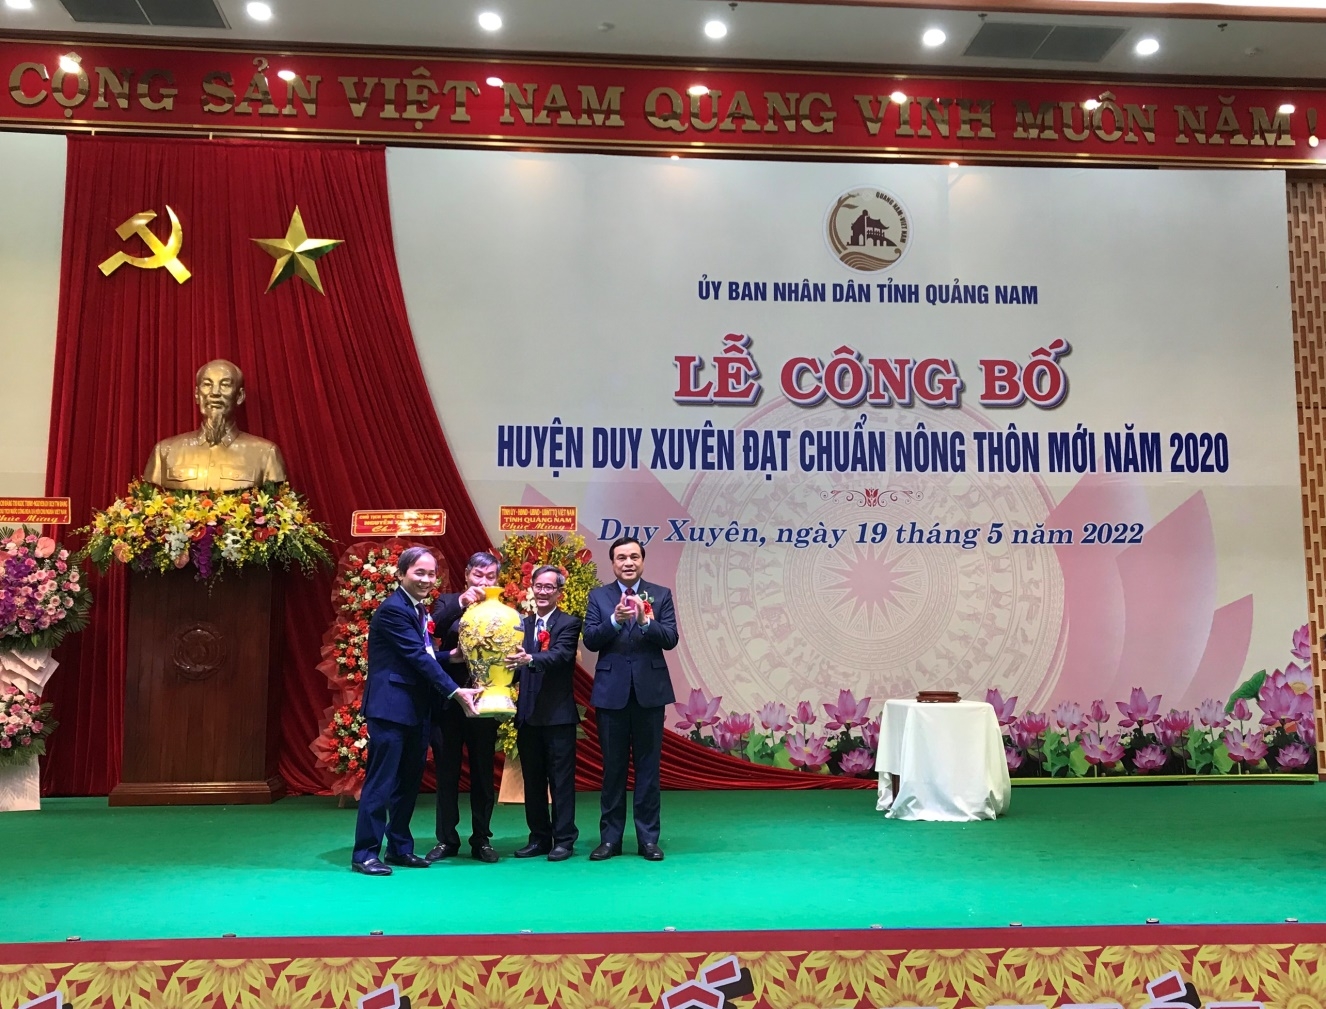 Huyện Duy Xuyên  về đích trong xây dựng Nông thôn mới